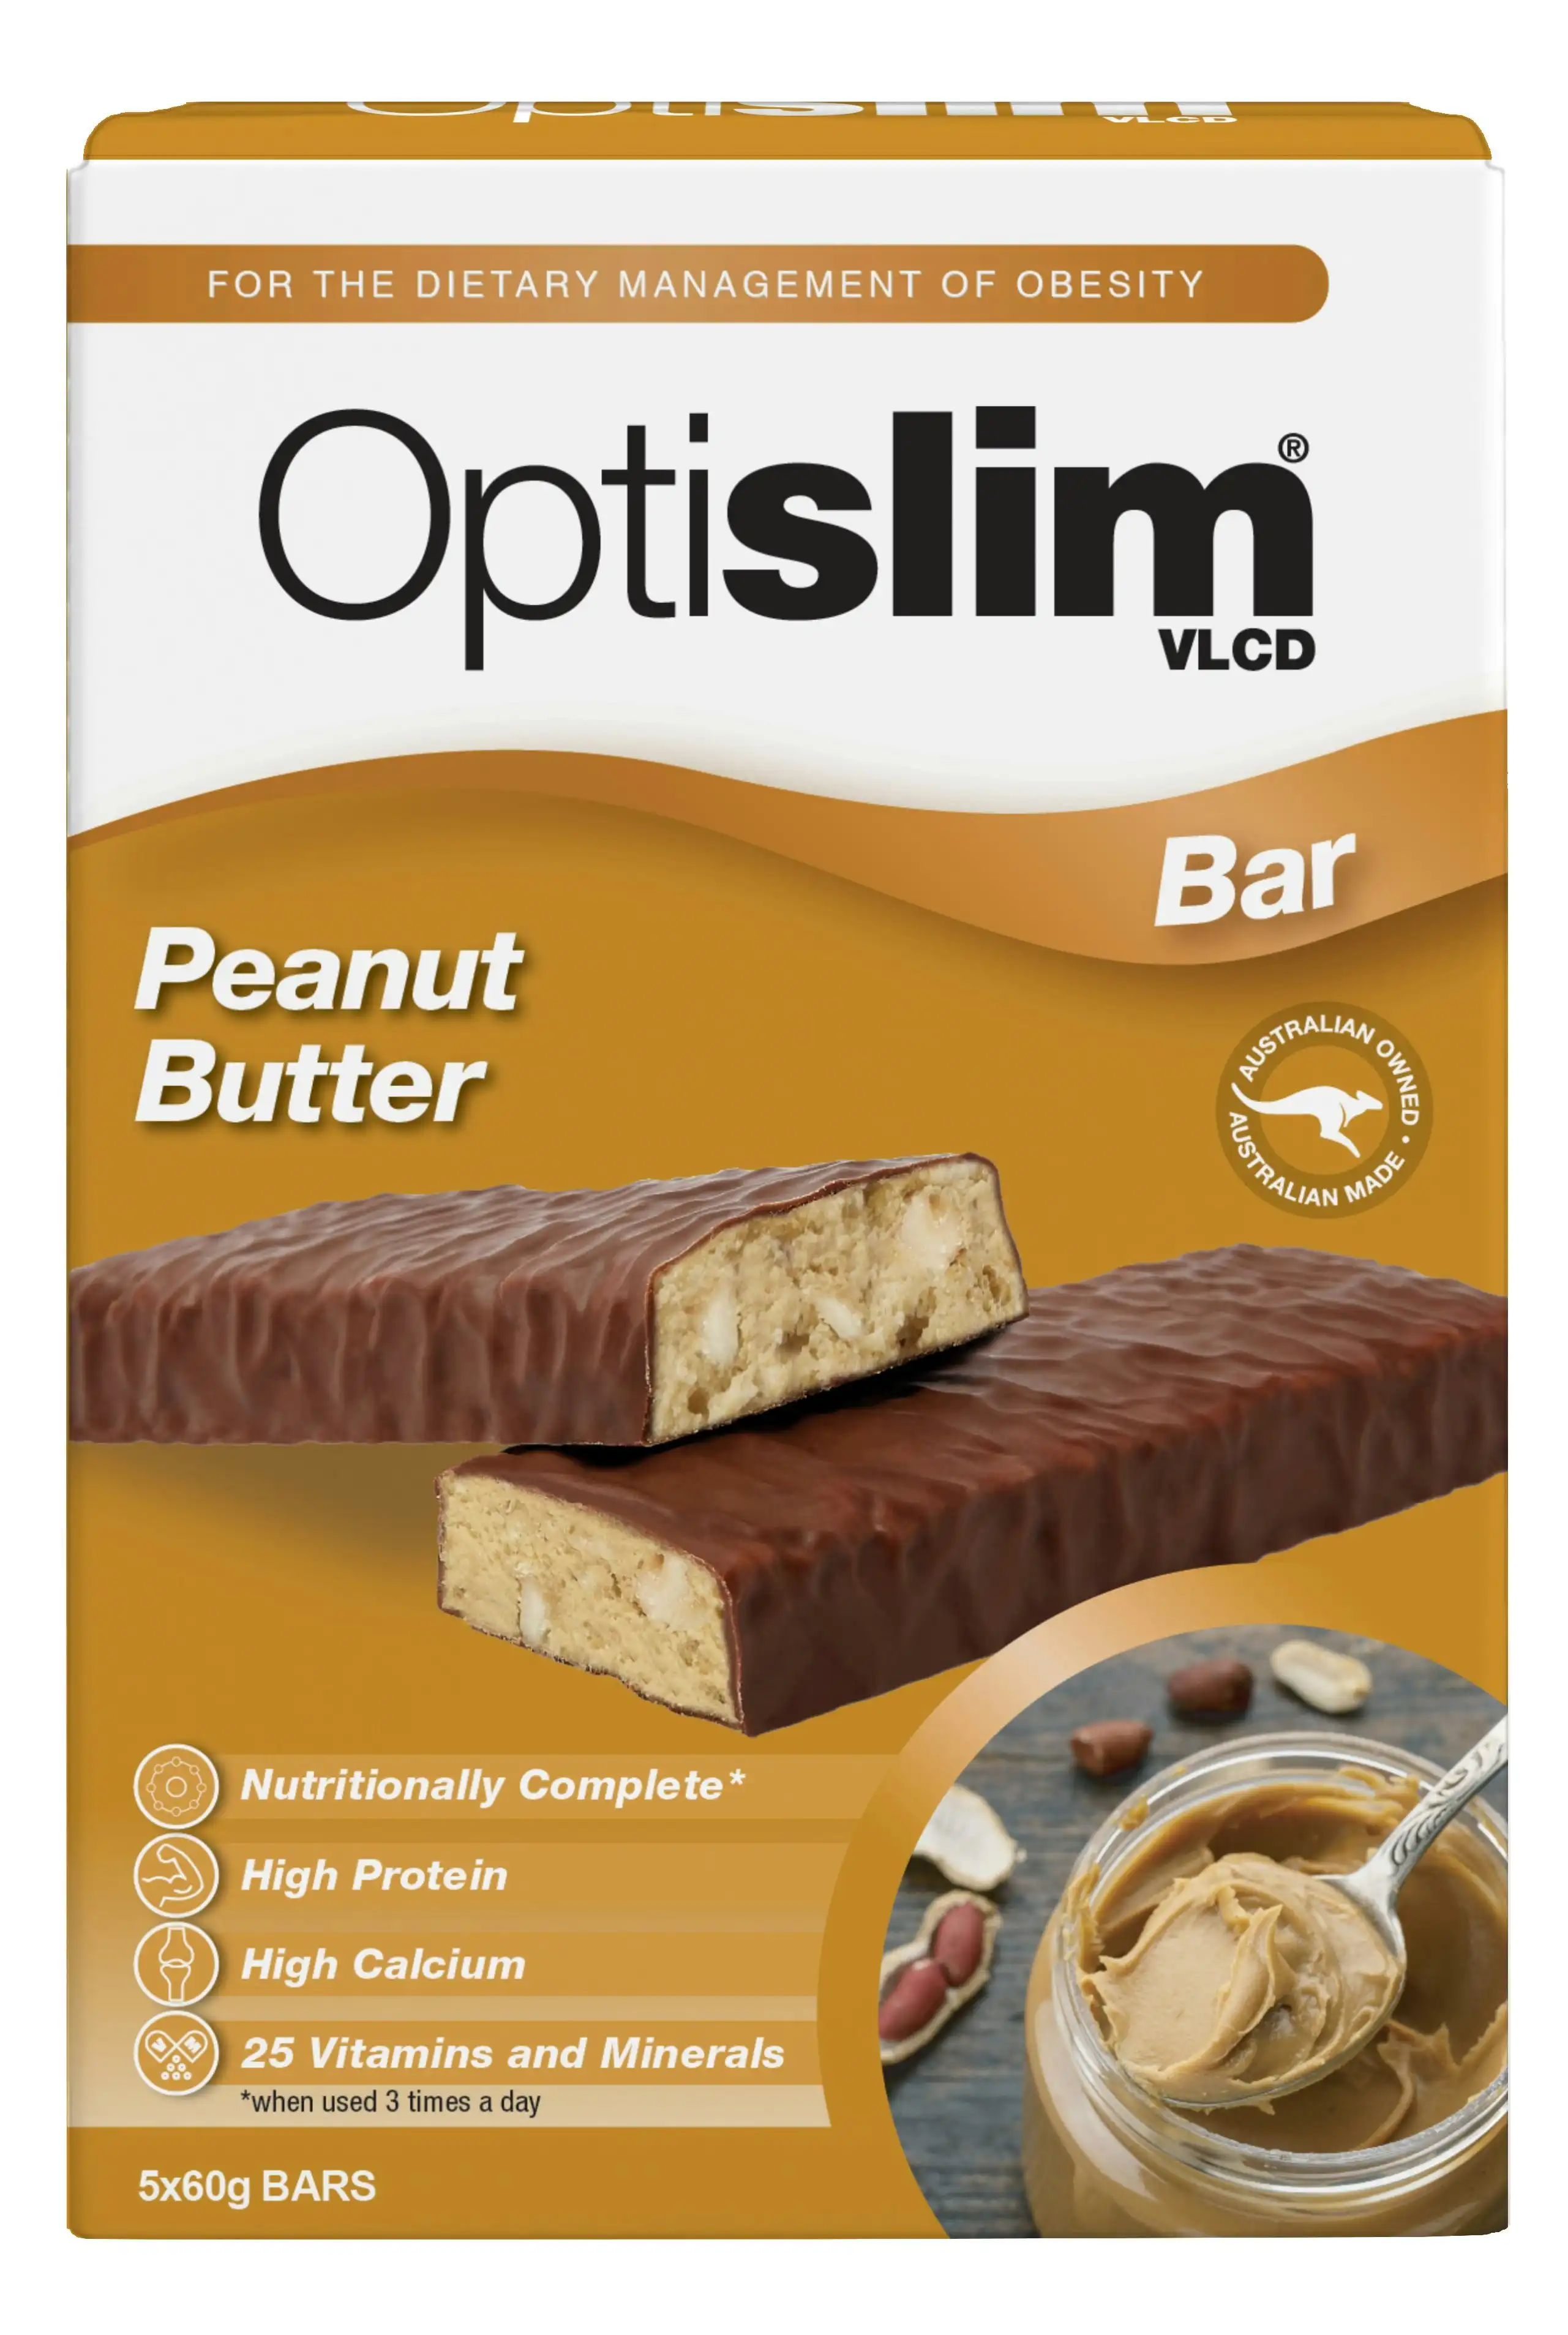 OptiSlim VLCD Peanut Butter Bar 5X60g